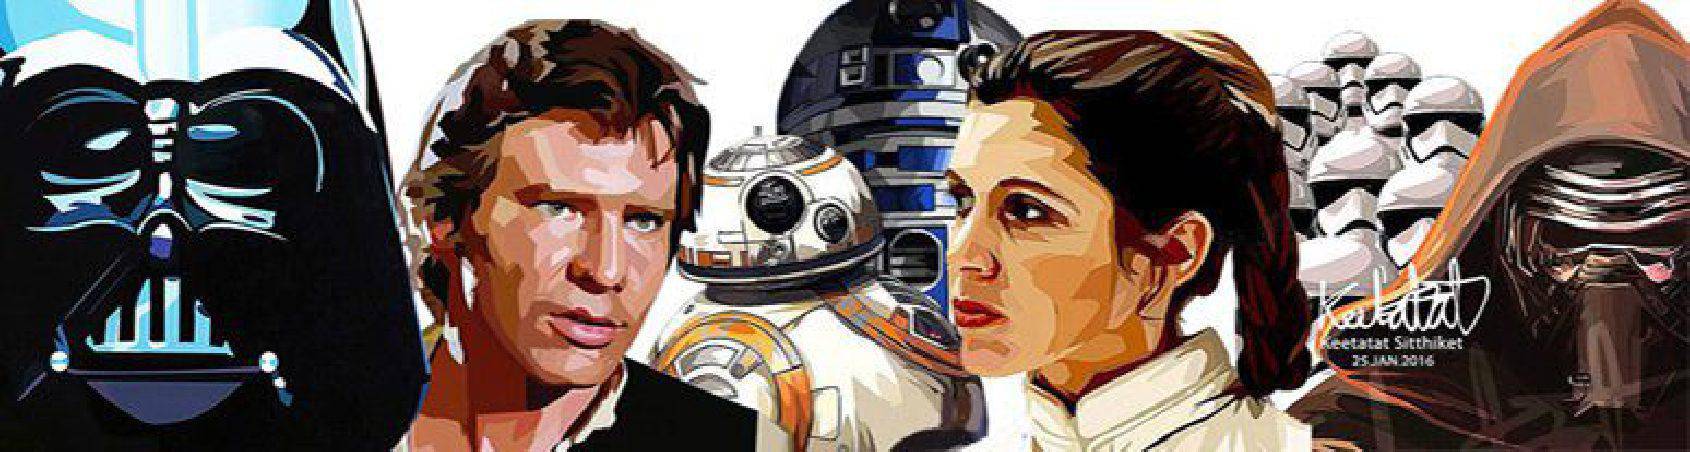 quadres de personatges i composicions de la saga Star Wars